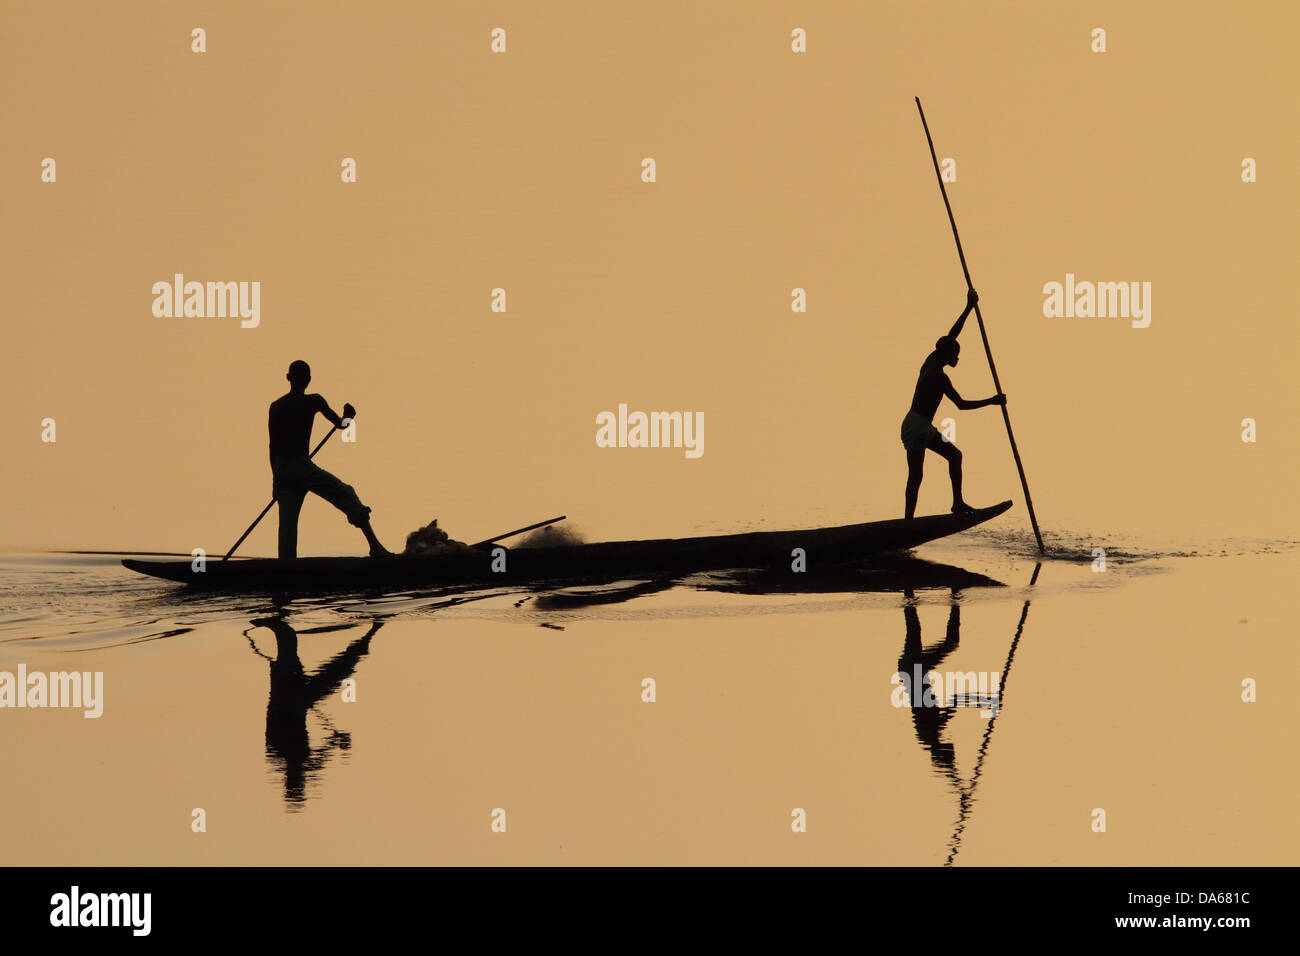 Bantu, Menschen, Fischer, Fischer, Fischerboot, Einbaum, Sonnenuntergang, Kontur, Spiegel Bildgebung, Spiegelung, Reflexion, Wasser Stockfoto